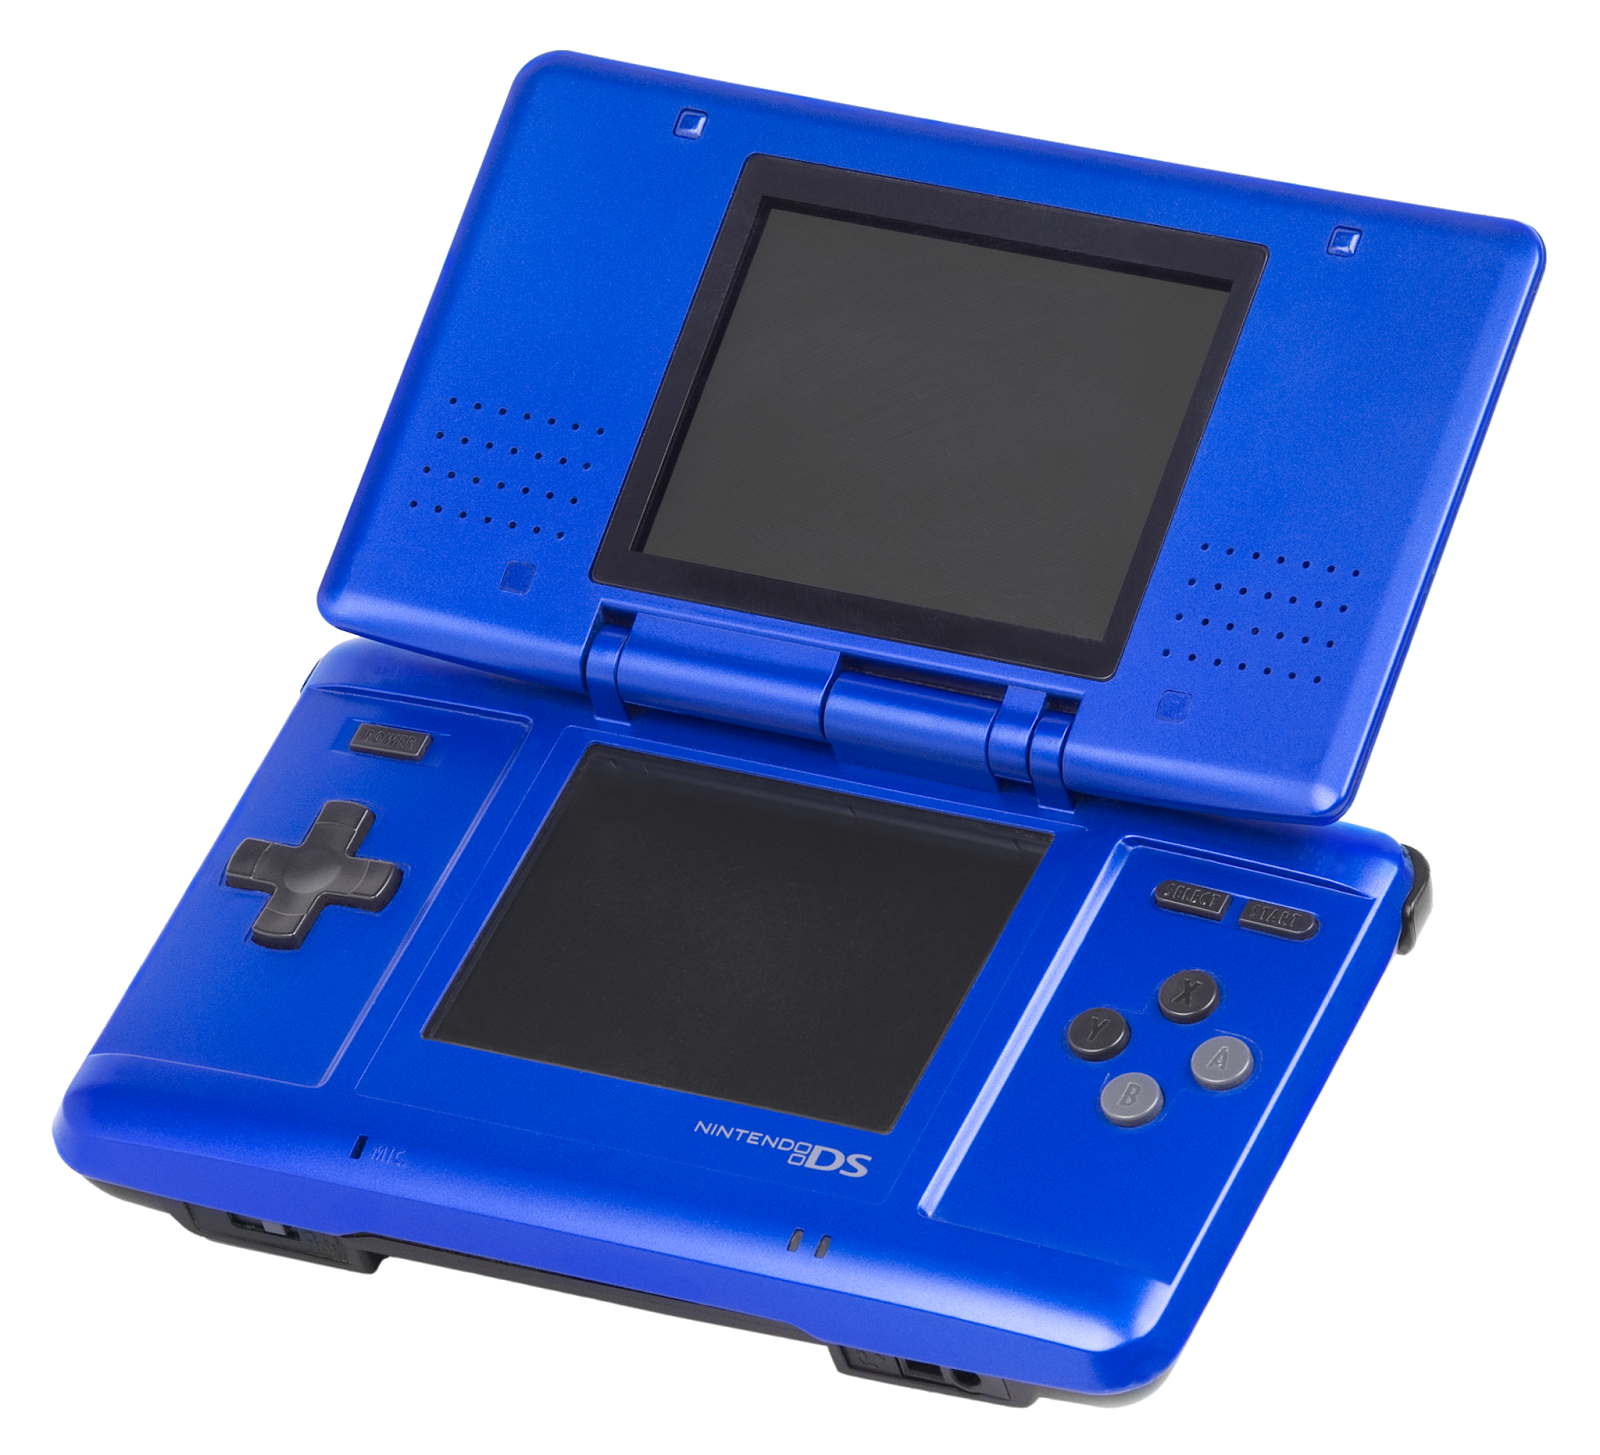 Imagen con la consola portátil de Nintendo: Nintendo DS, 2004